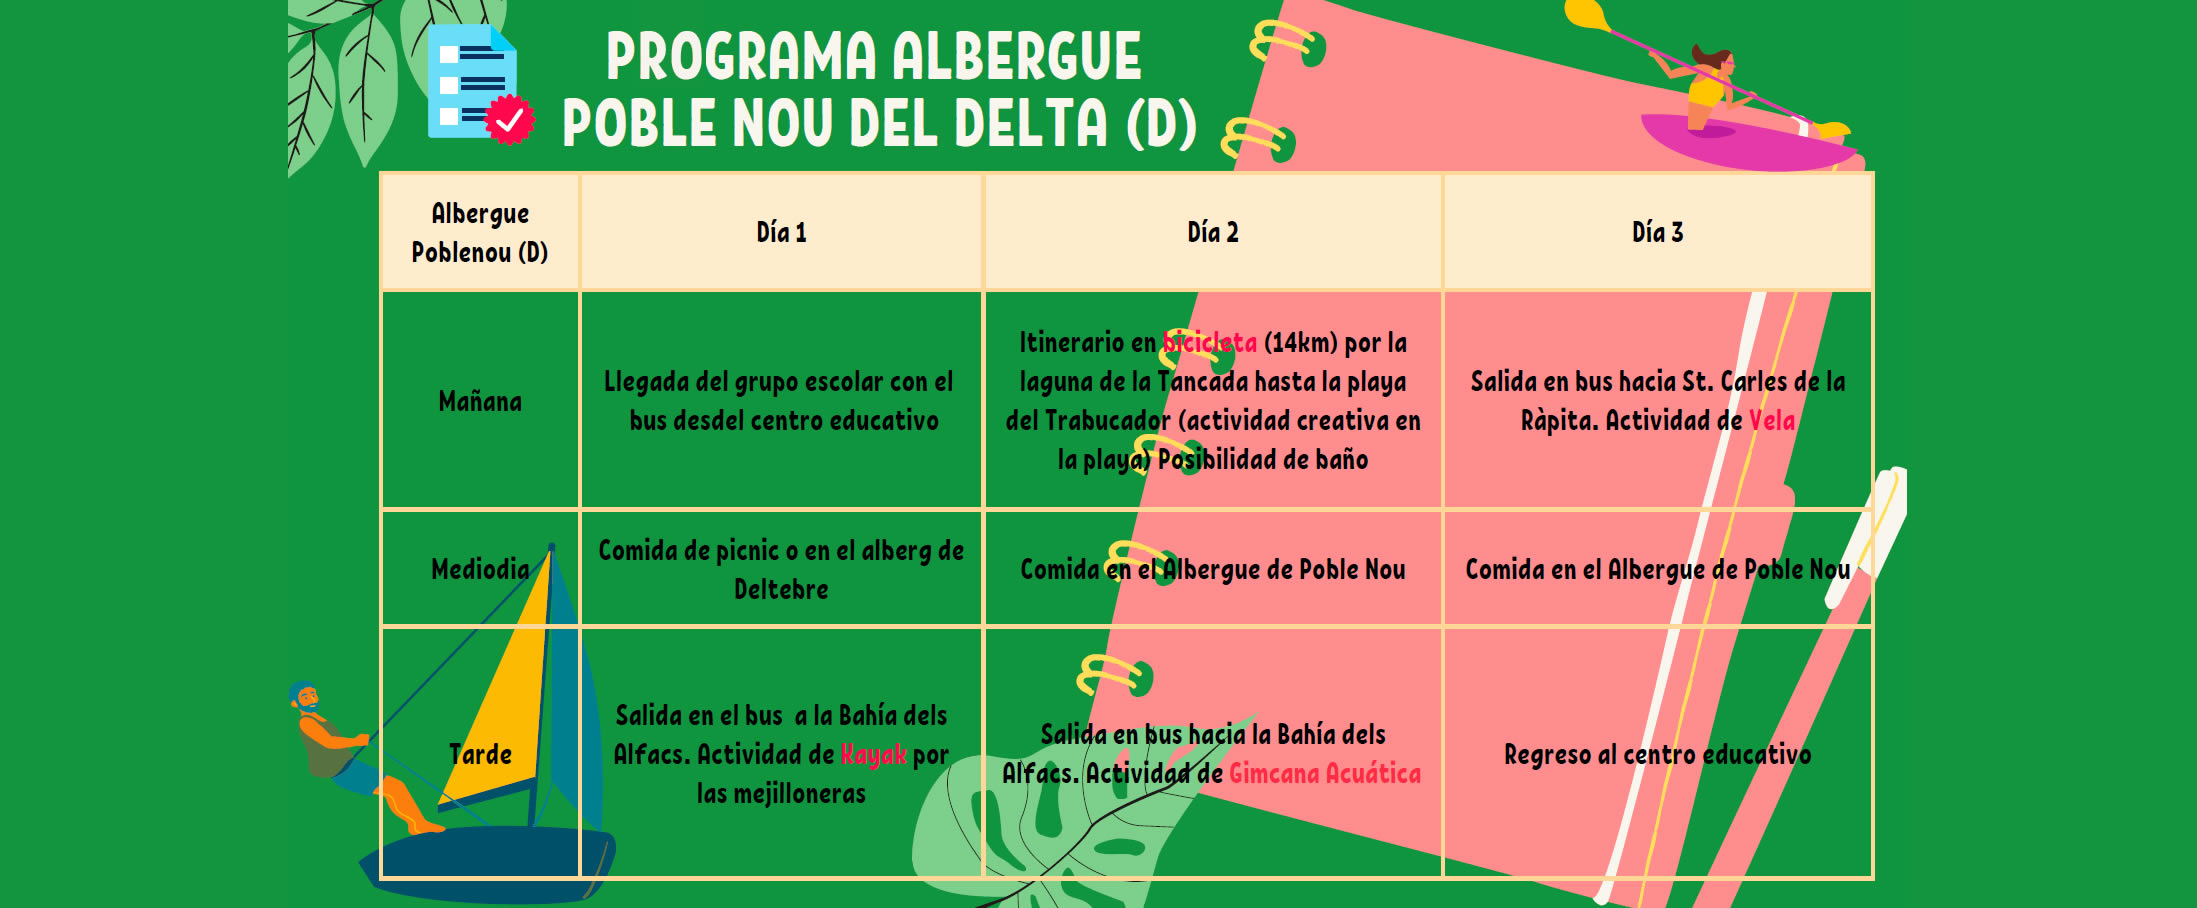 Programme scolaire à l’auberge Poble Nou del Delta (D)